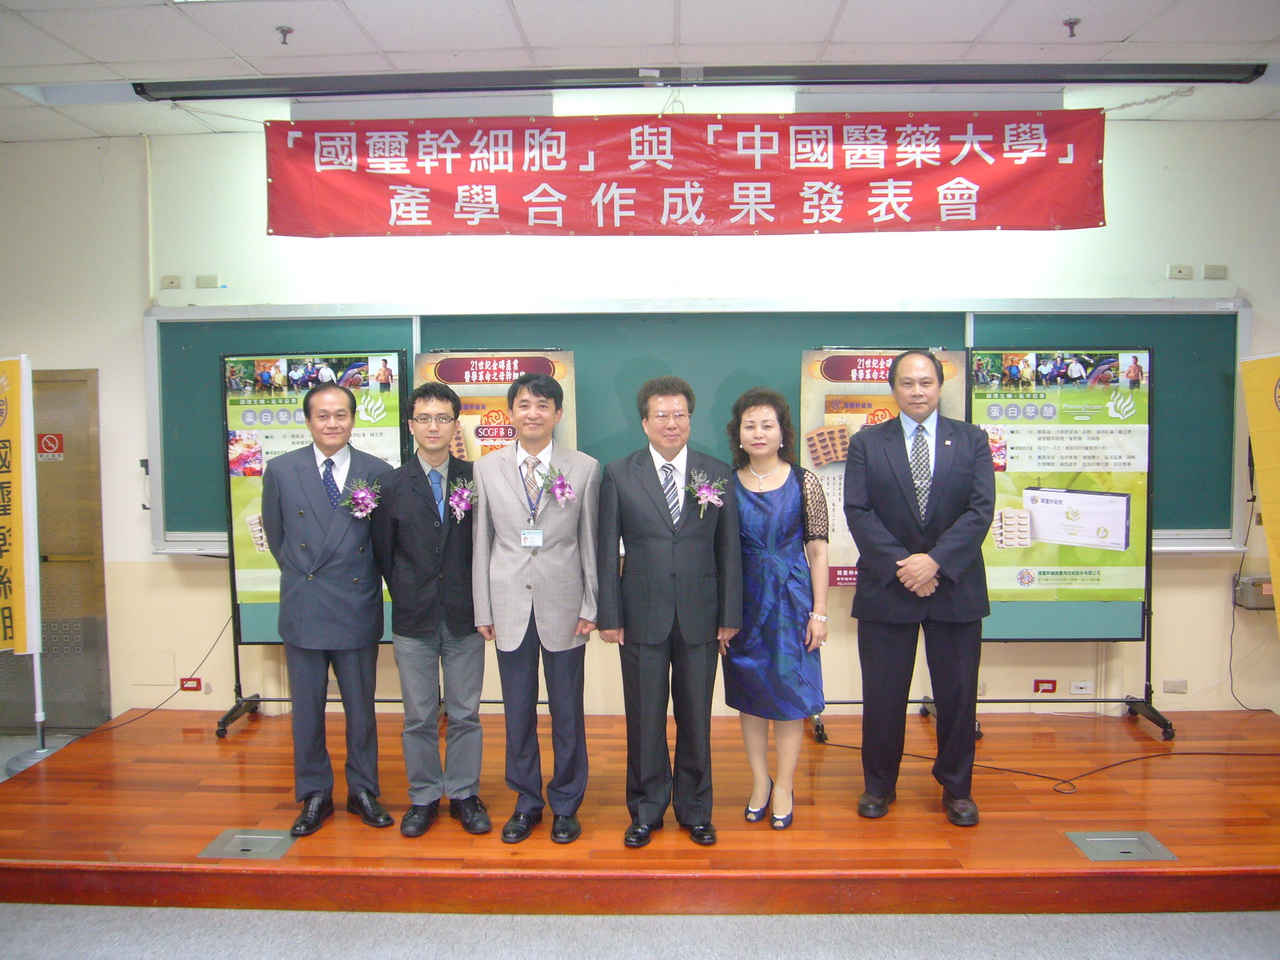 造福人類健康的中國醫藥大學與國璽幹細胞應用技術公司產學合作團隊